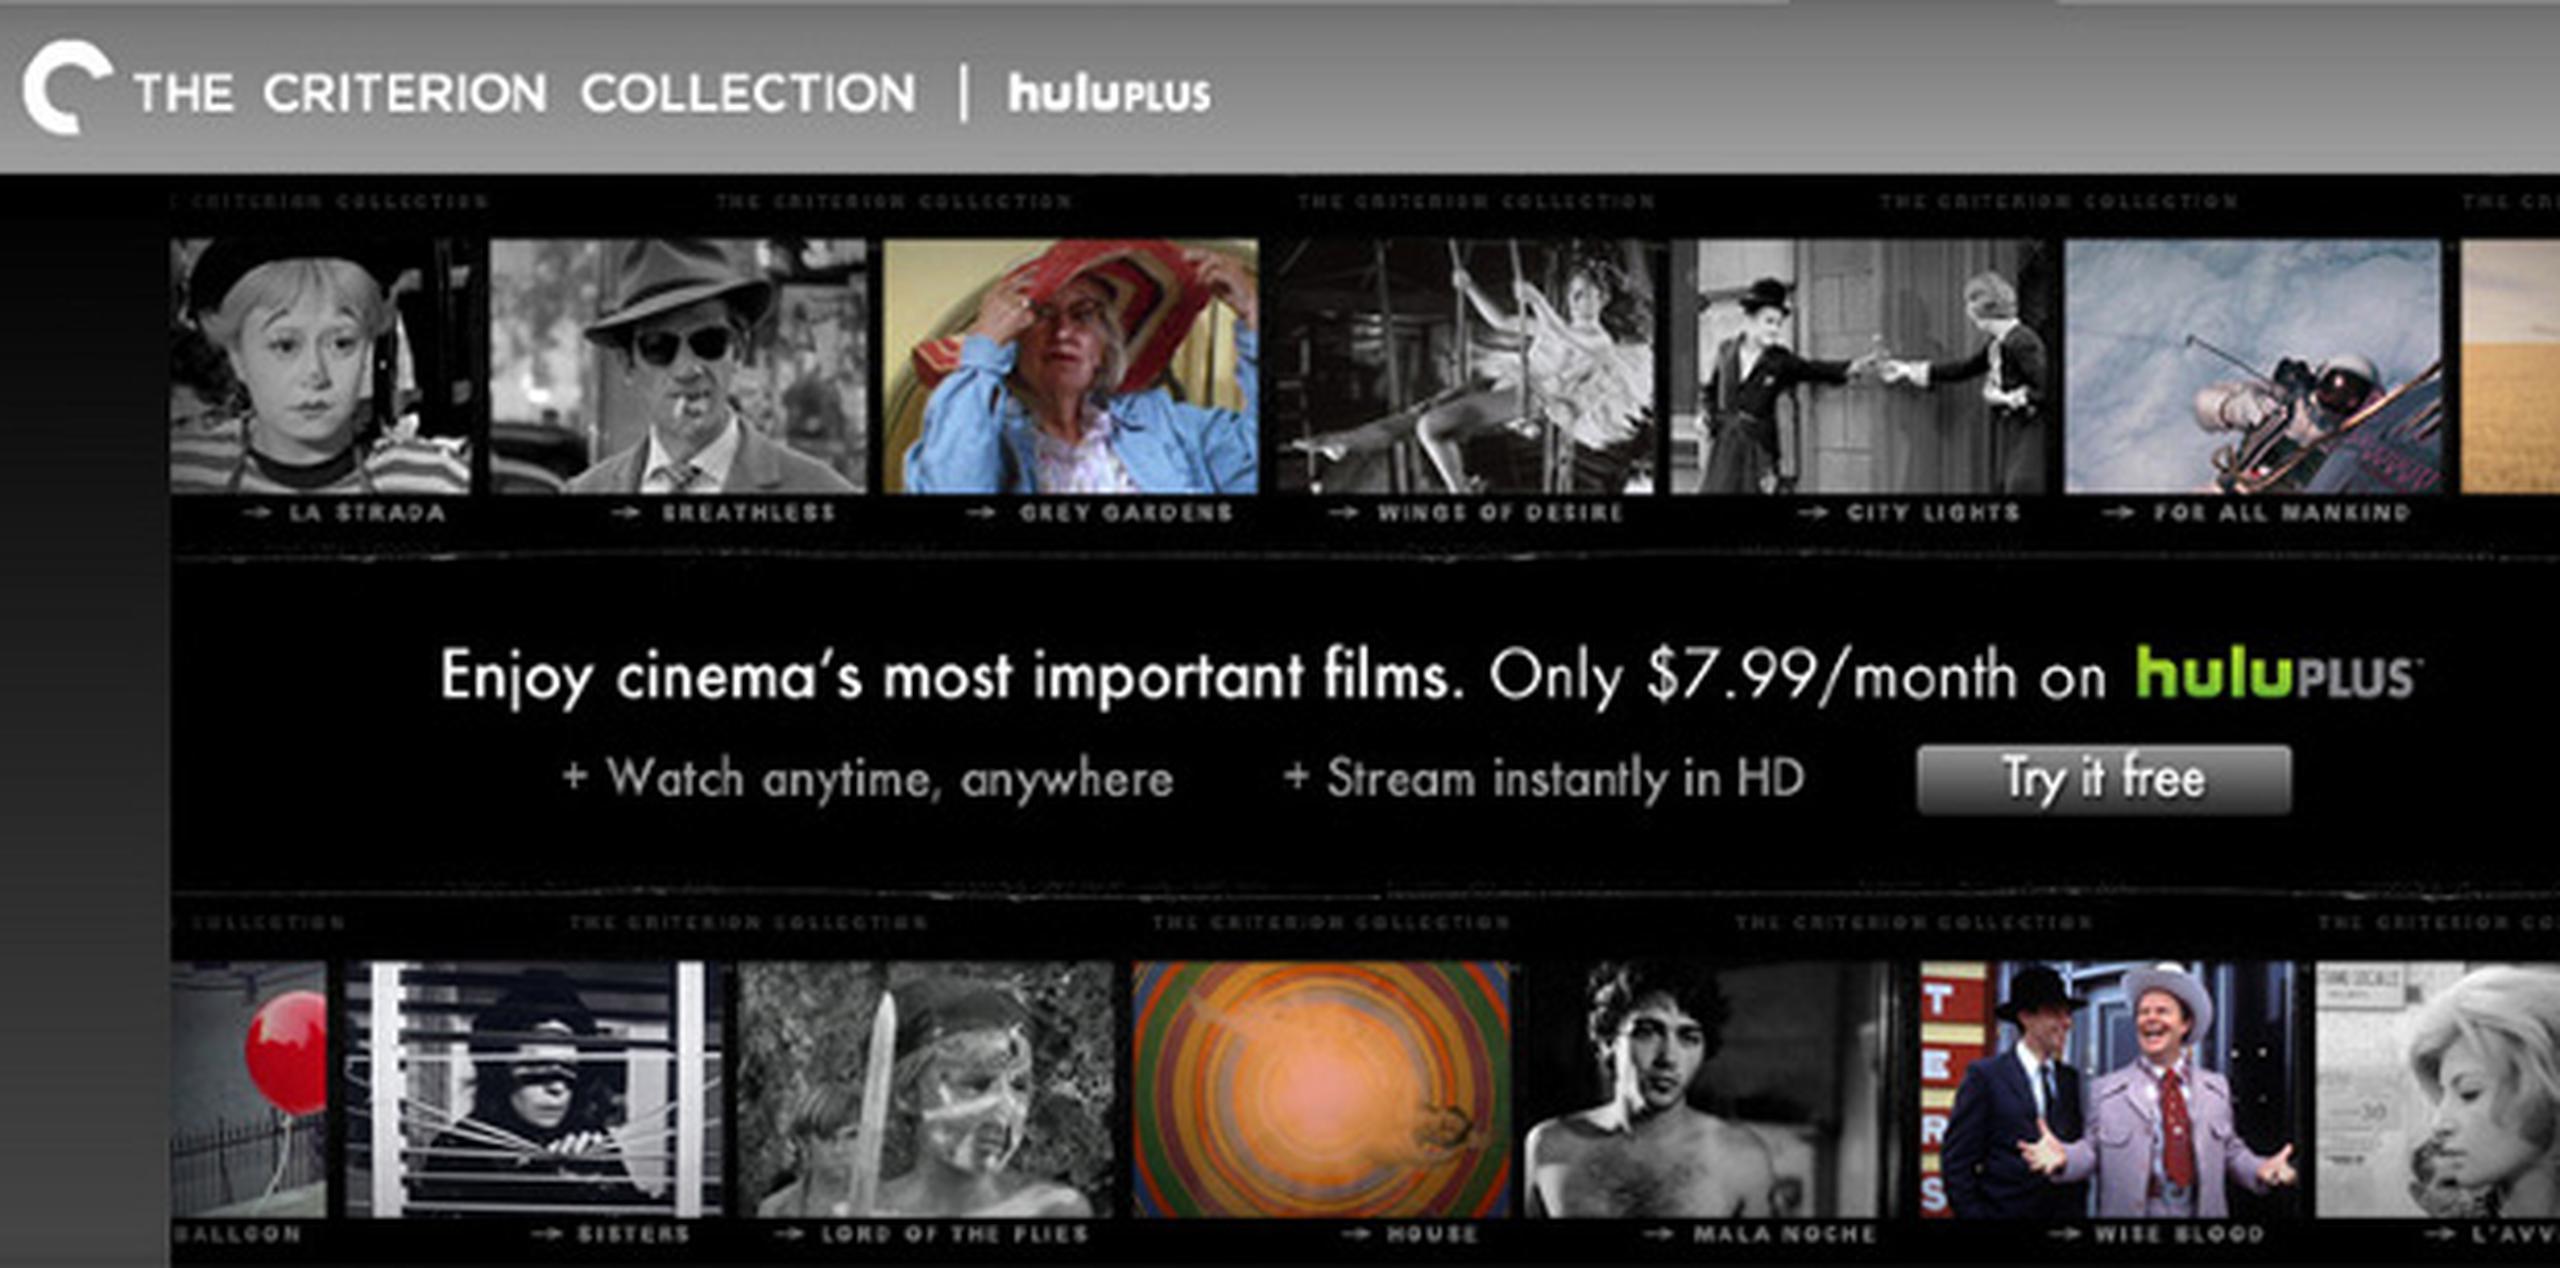 Desde 2011, las películas de Criterion Collection han sido difundidas exclusivamente por Hulu Plus.